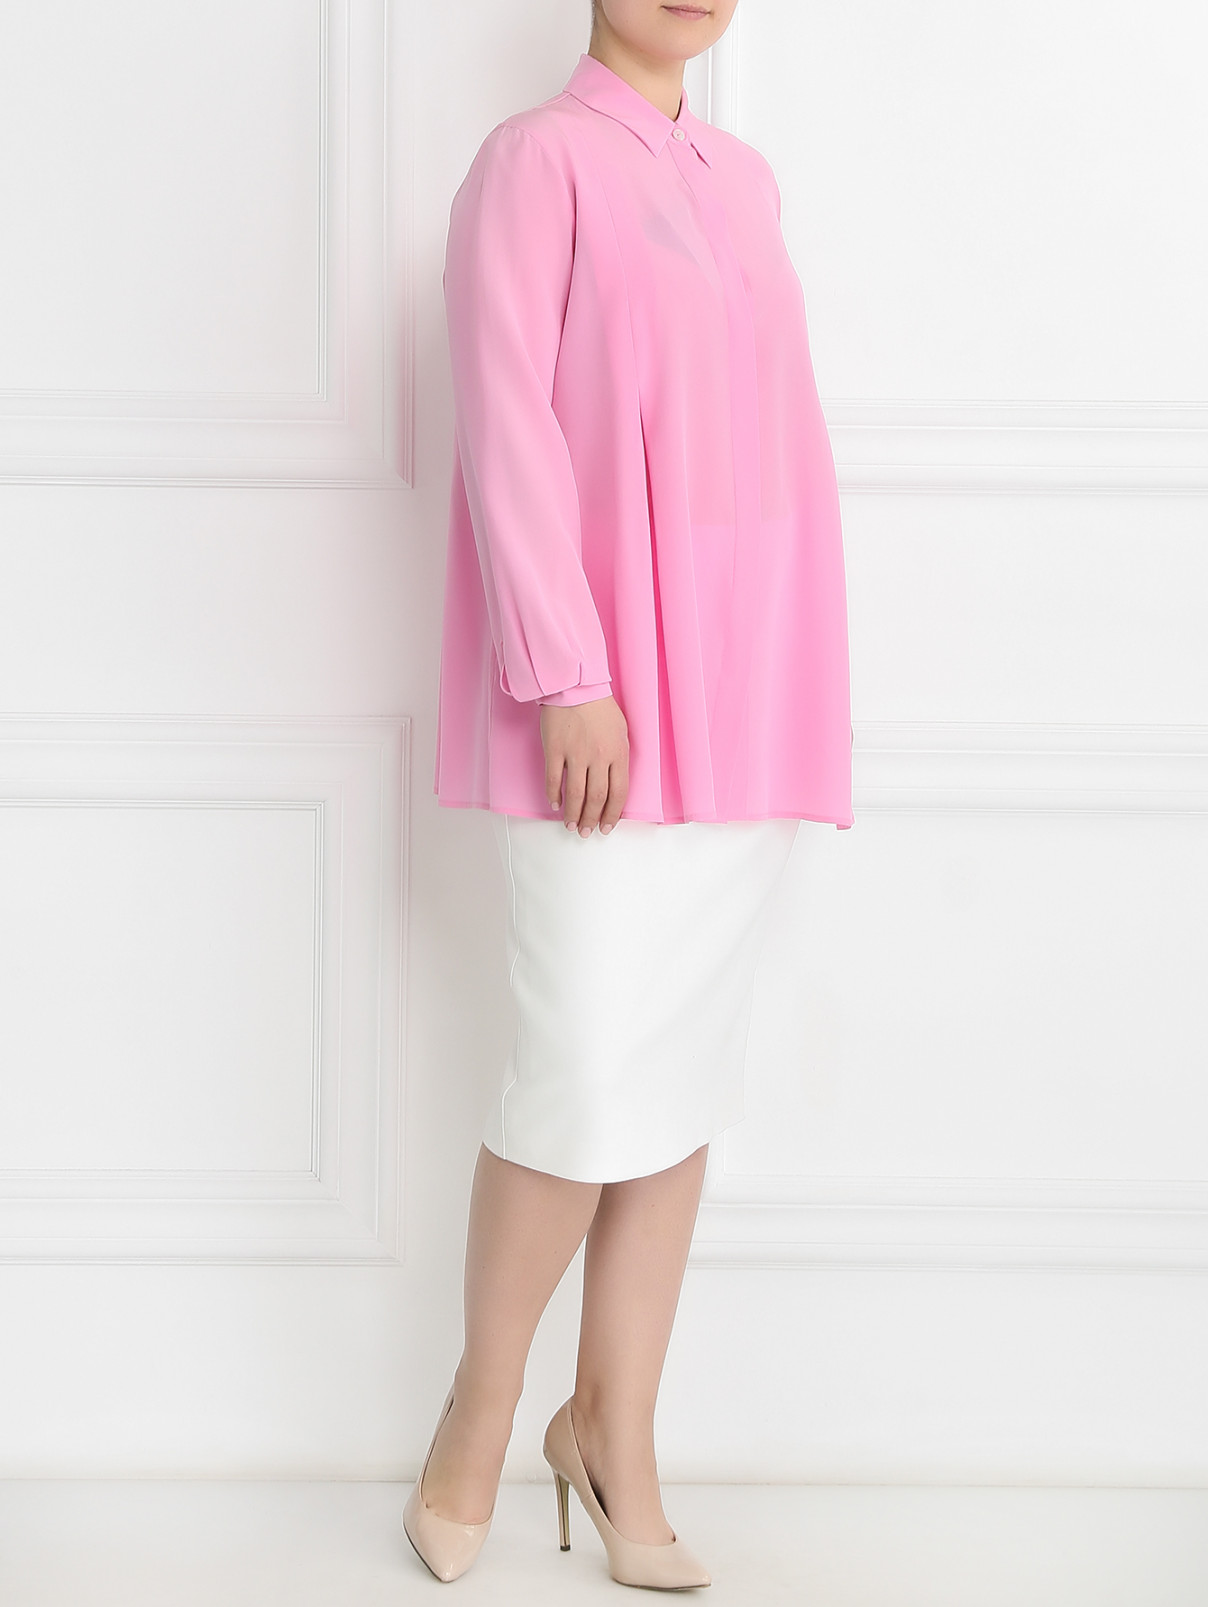 Блуза из шелка Marina Rinaldi  –  Модель Общий вид  – Цвет:  Розовый